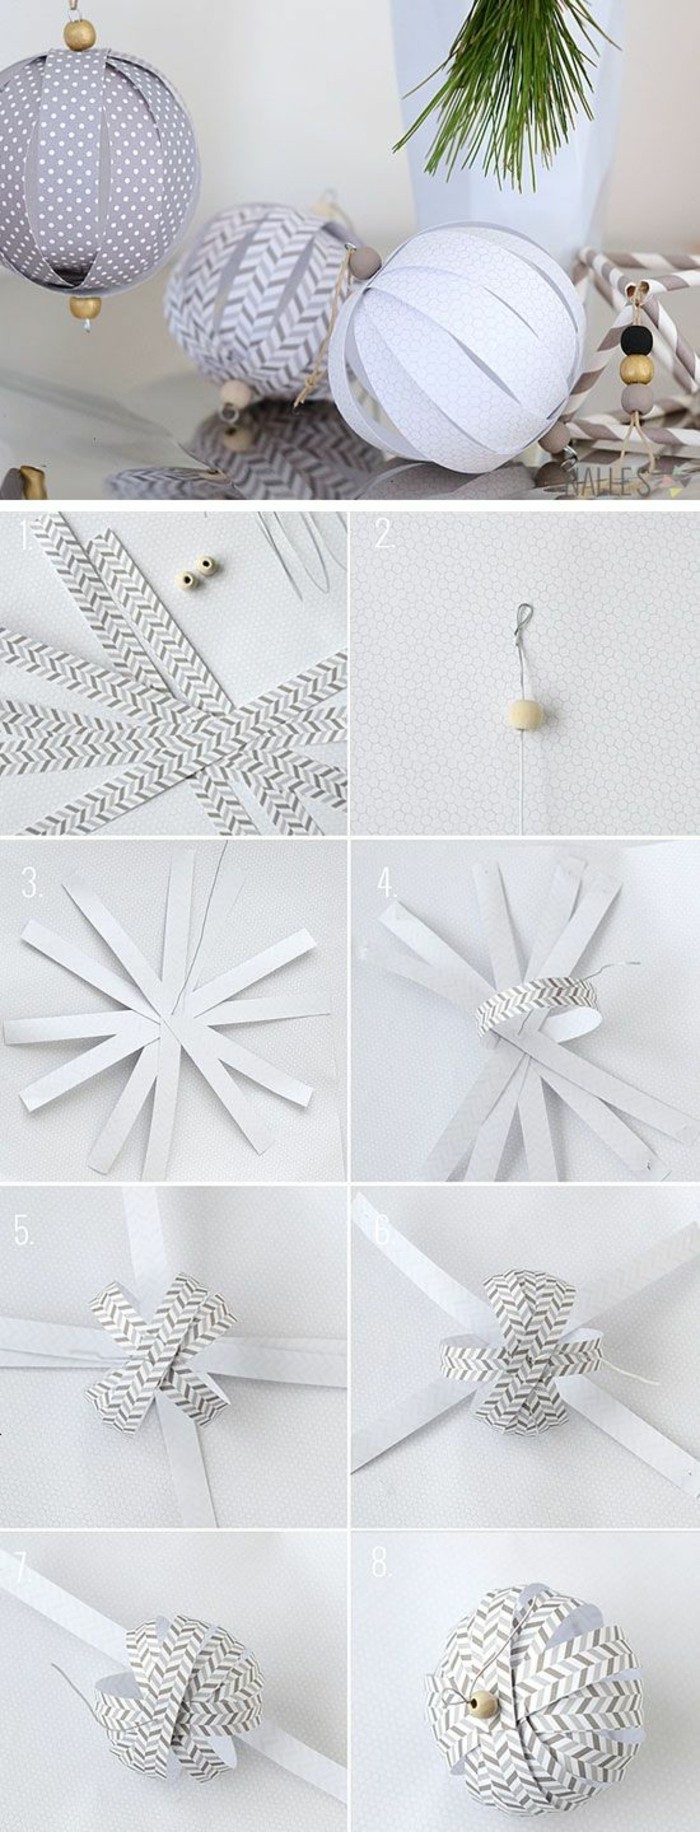 decoraciones-Crafts de-papel- decoración de bricolaje de decisiones Weihnachtsdeko-ideas-navidad